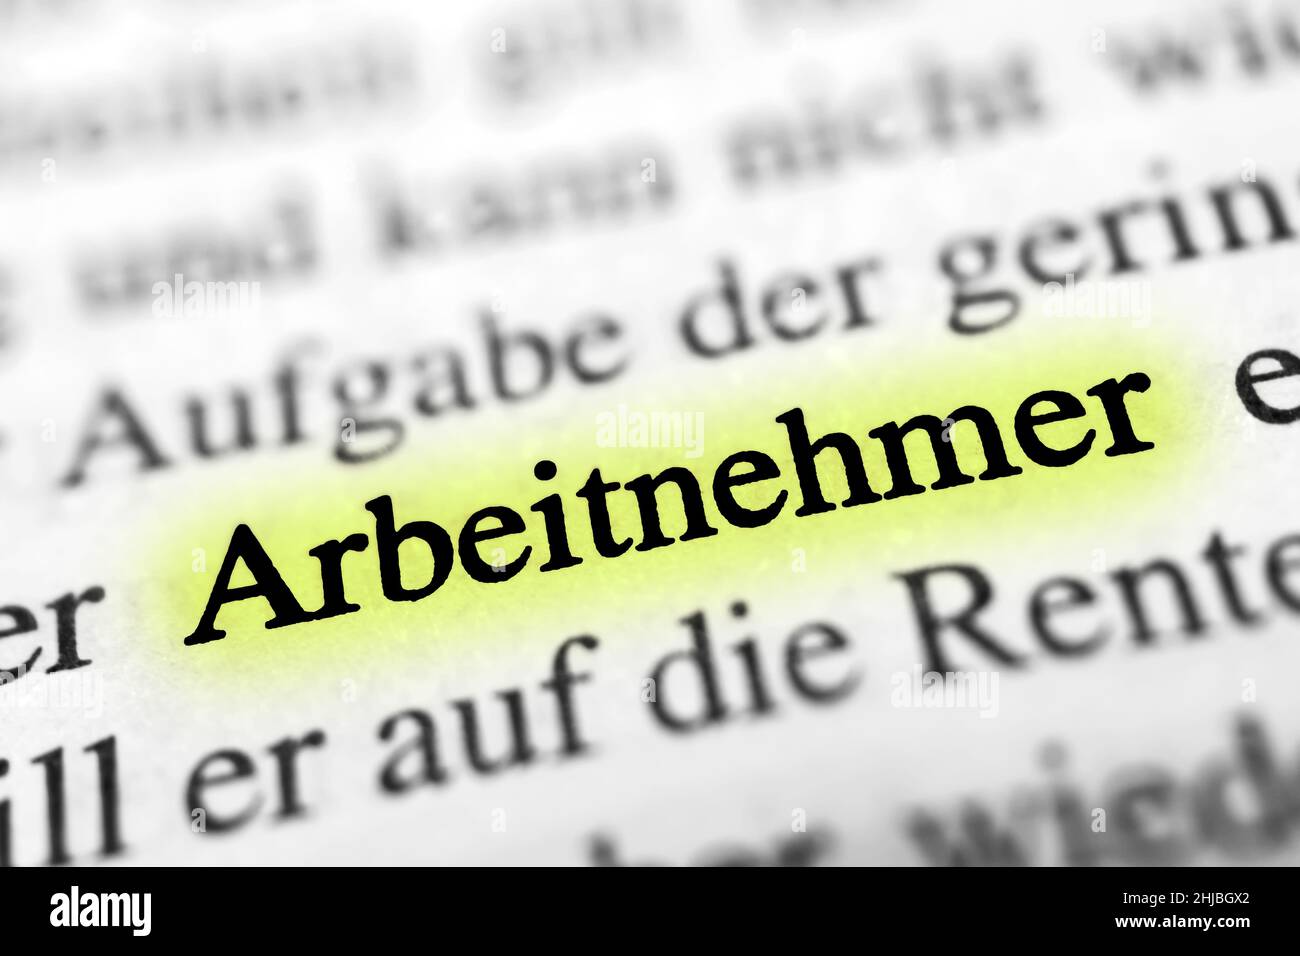 Gros plan sur le mot allemand en surbrillance 'Arbeitnehmer' dans un journal. Traduction : employé Banque D'Images